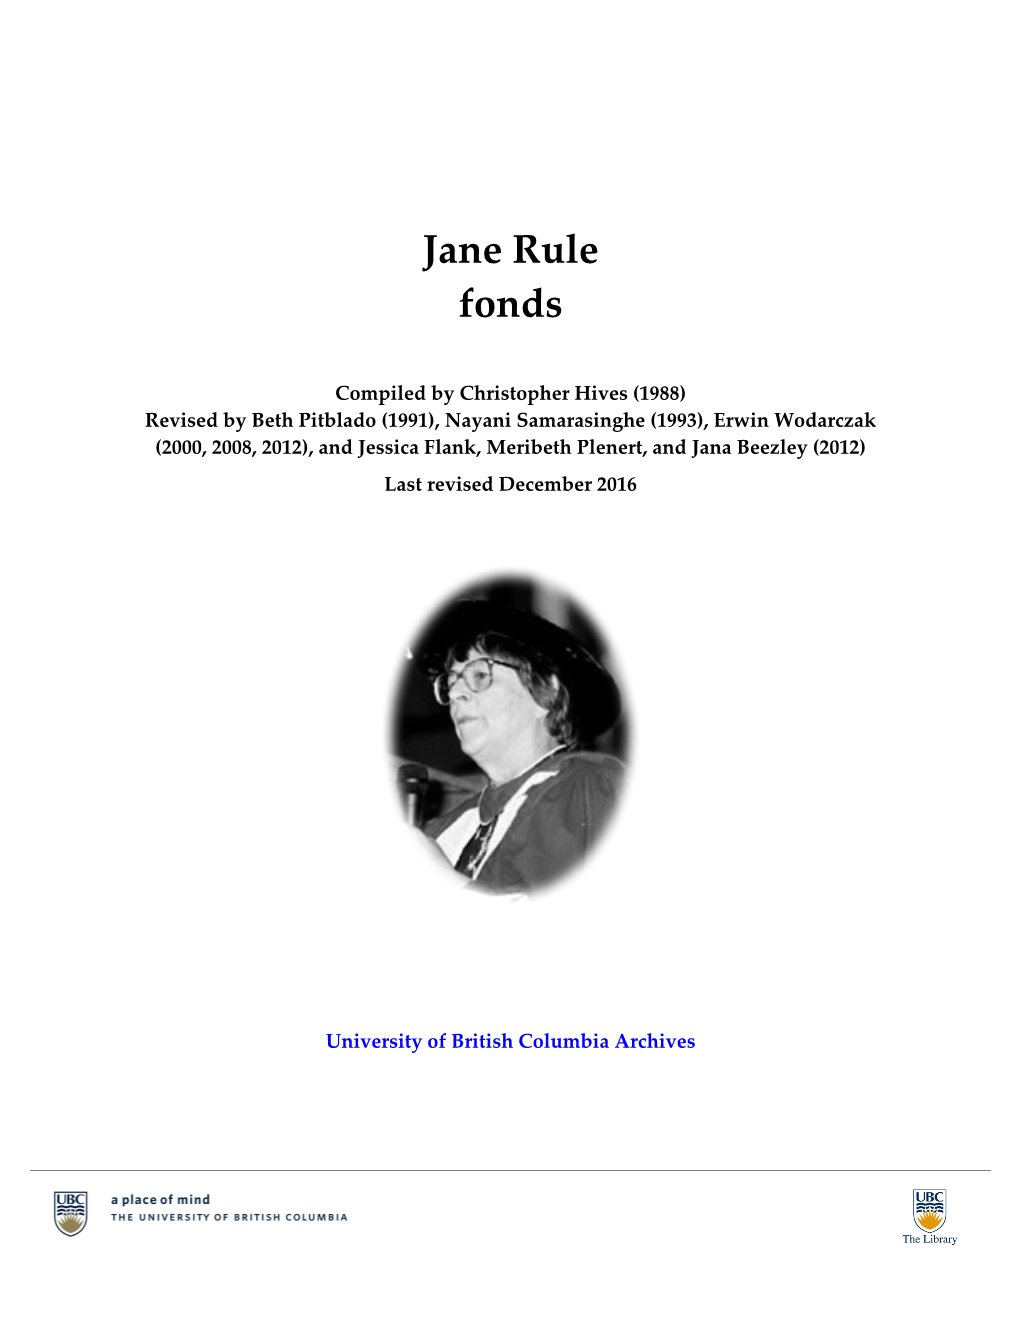 Jane Rule Fonds